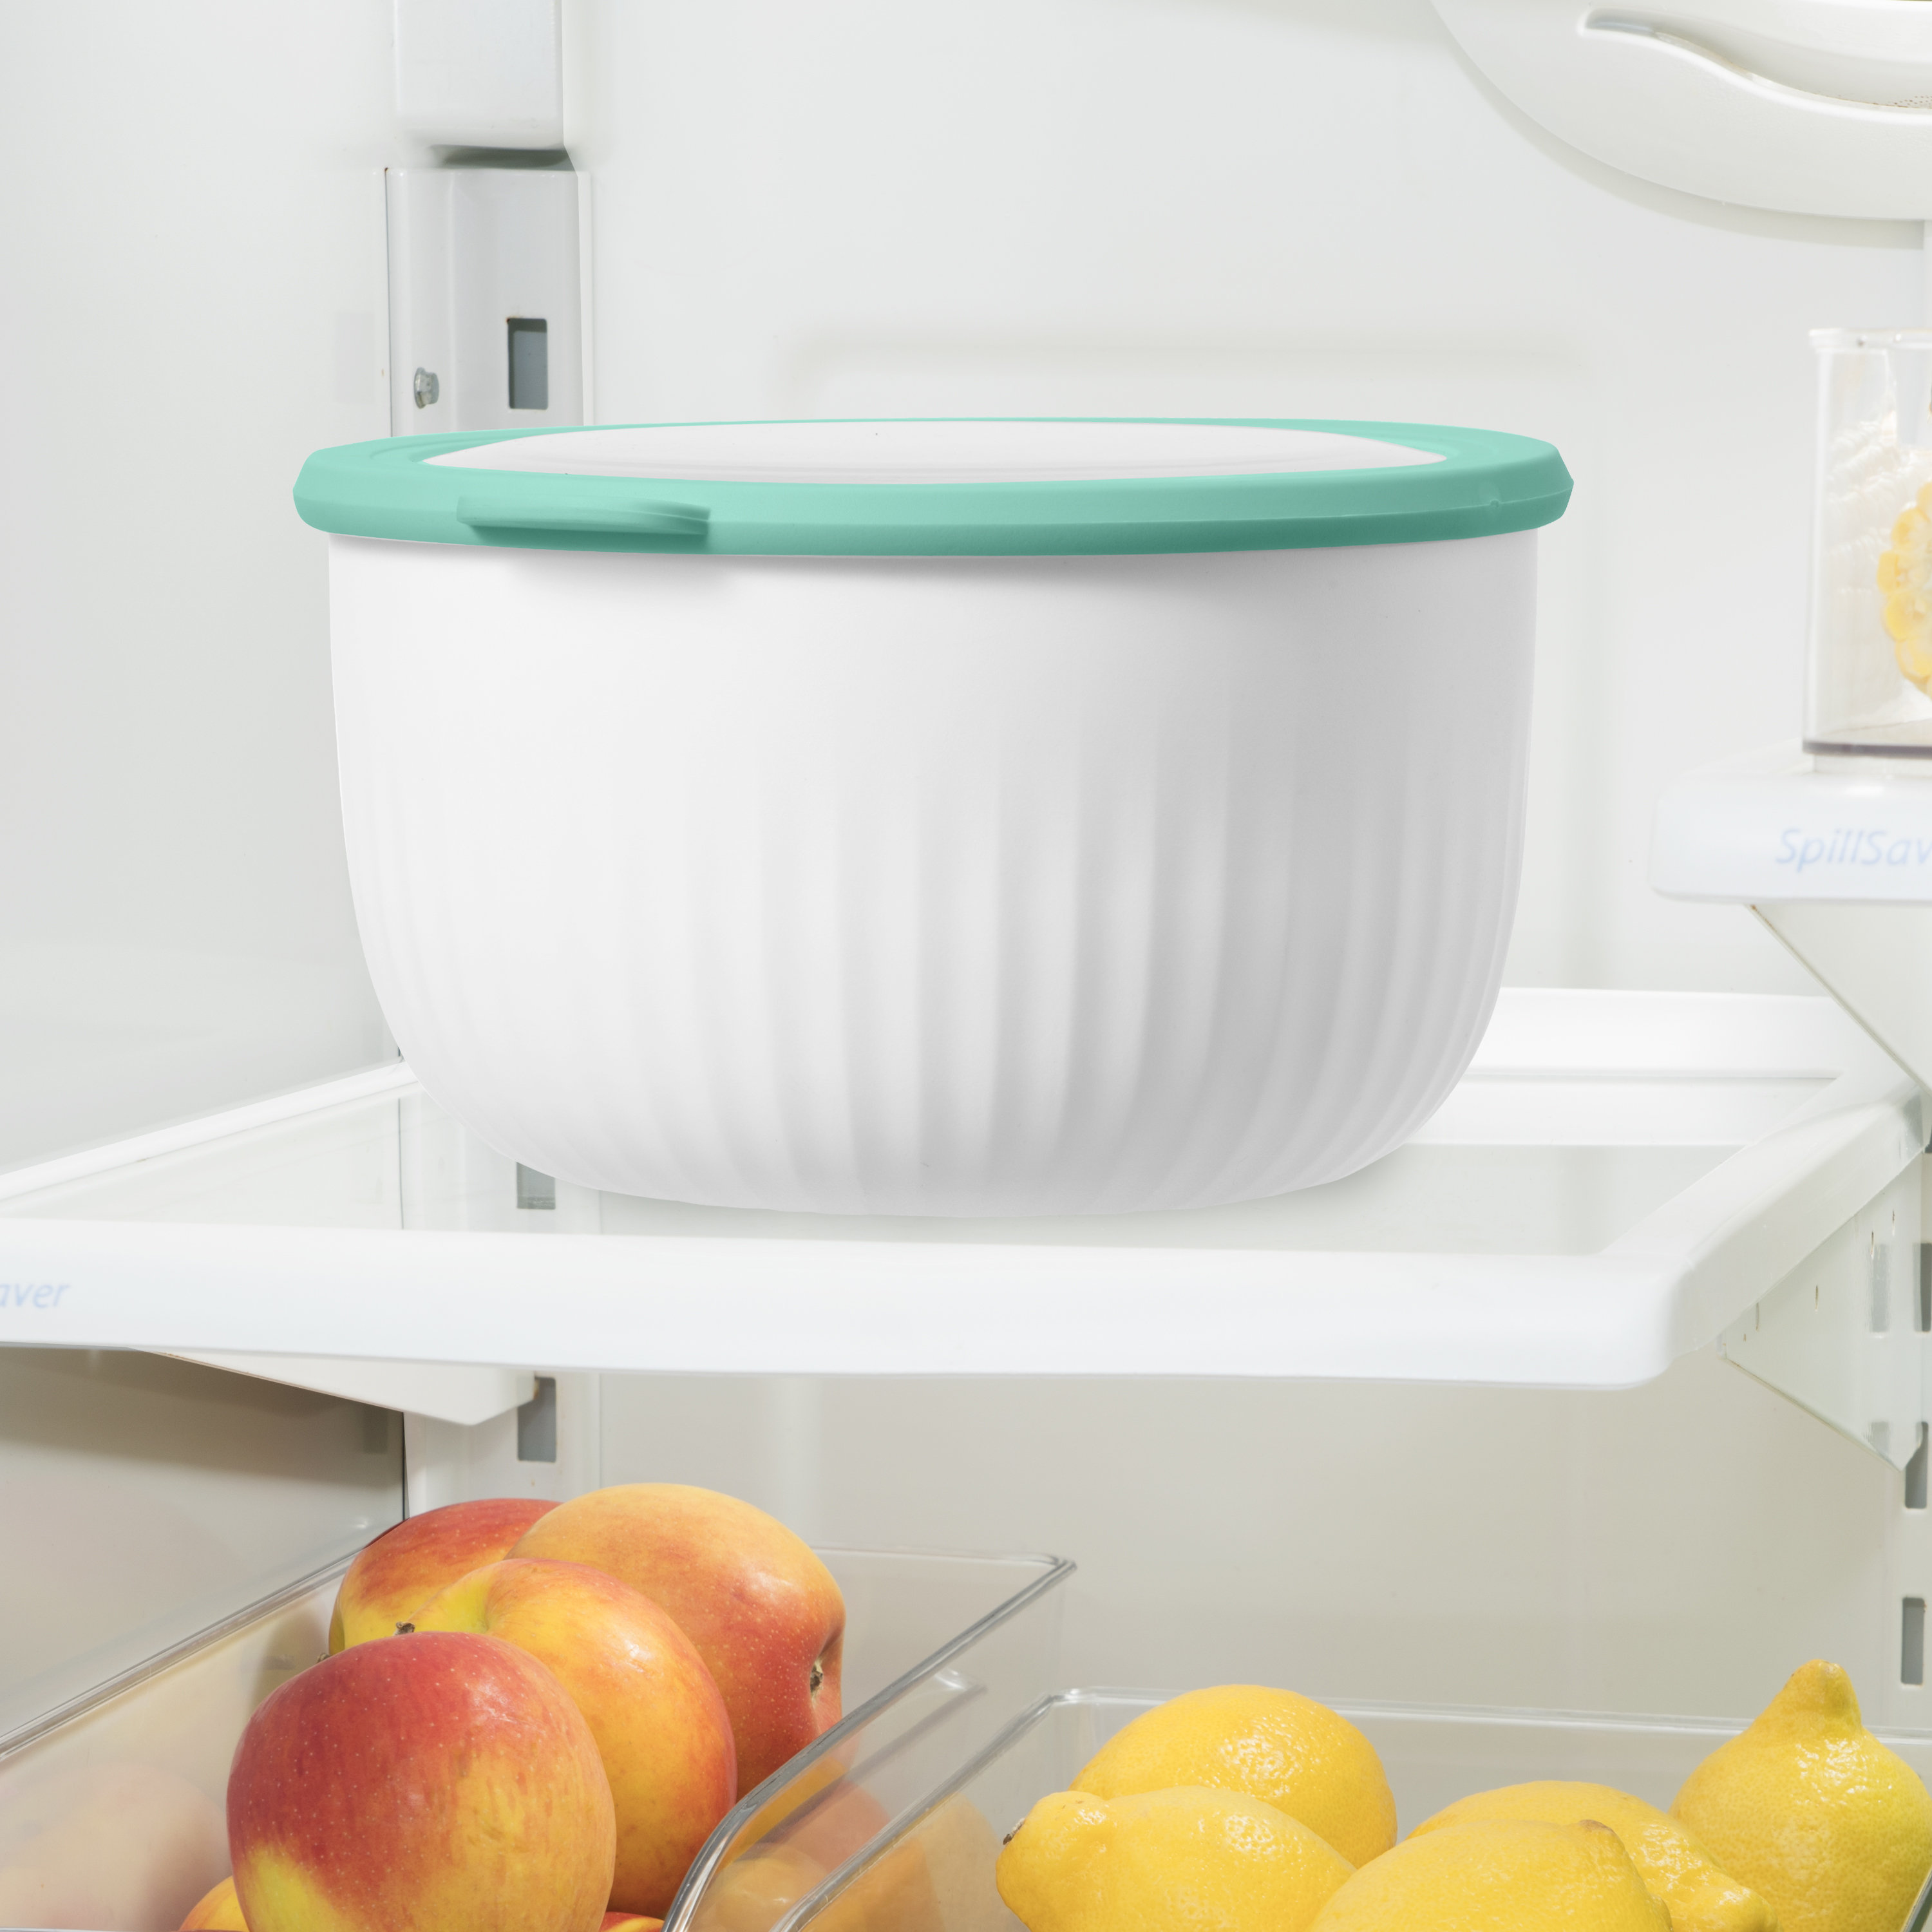 1Pcs Plastic Fruit Bowls - Crystal Bowls - Fruit Bowl For Kitchen Counter -  Plastic Fruit Holder - Fruit Basket Perfect For Fruit Storage & Serving &  Cooking & Baking & Kitchen